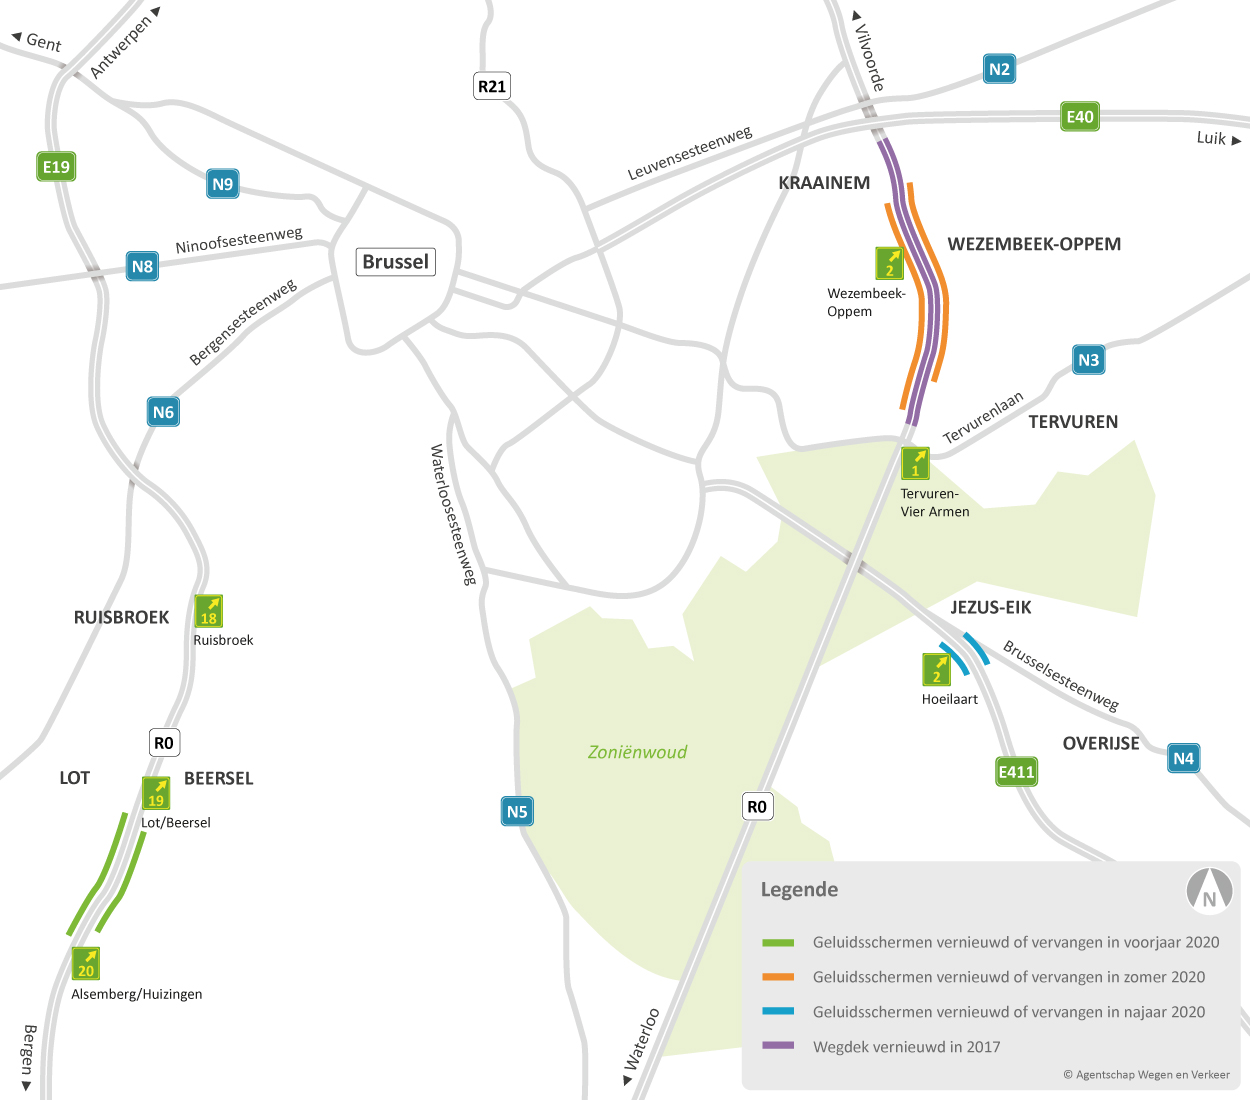 Kaart met de locaties van de geluidsschermen in Kraainem en Wezembeek-Oppem